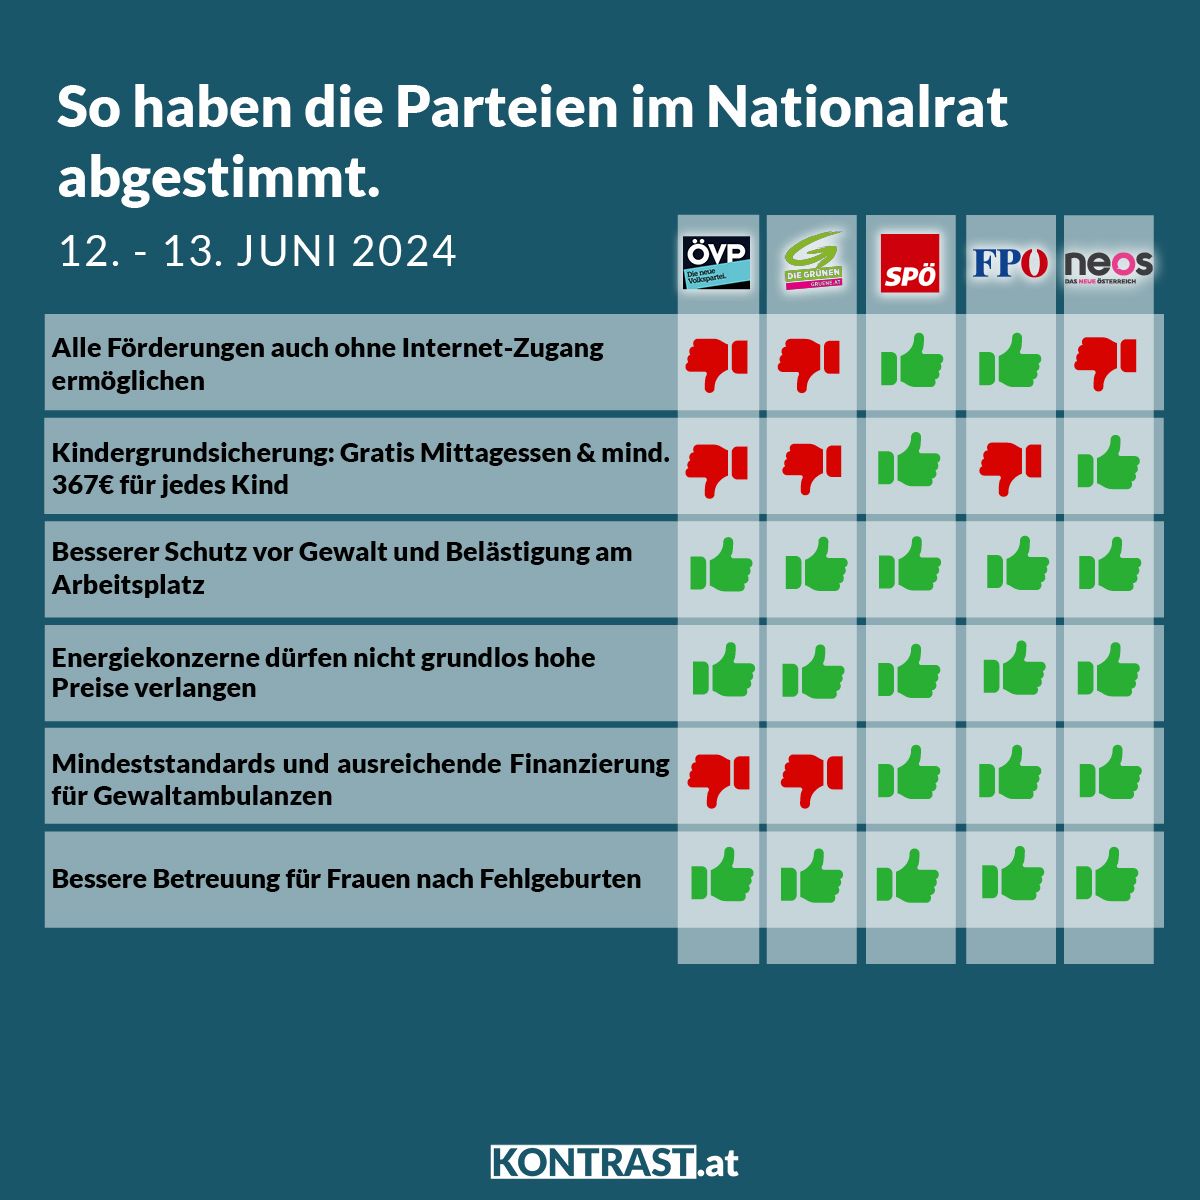 Nationalratssitzung vom 12. und 13. Juni 2024: So haben die Parteien abgestimmt!